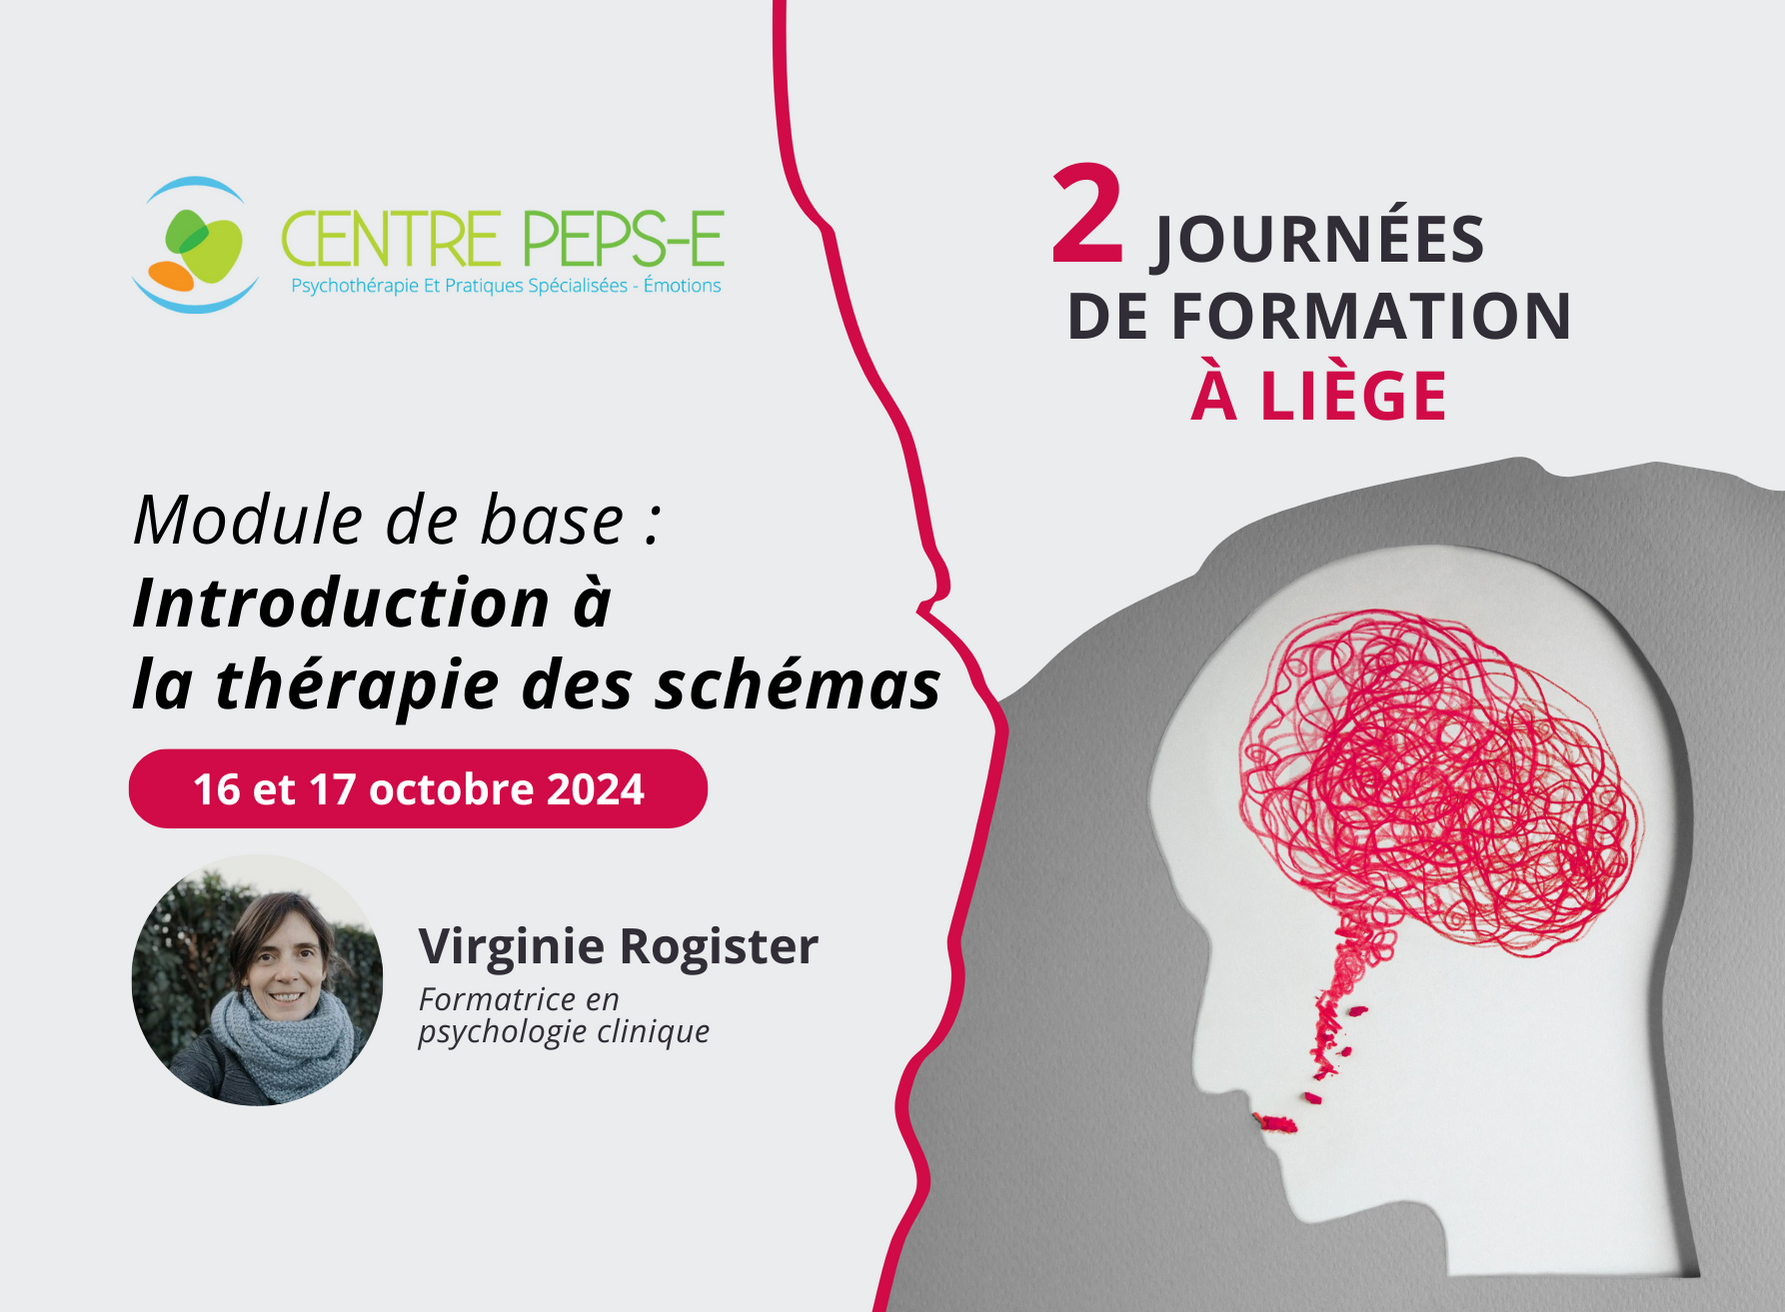 2 journées de formation (Liège) - Module de base : Introduction à la thérapie des schémas - 16 et 17 octobre 2024